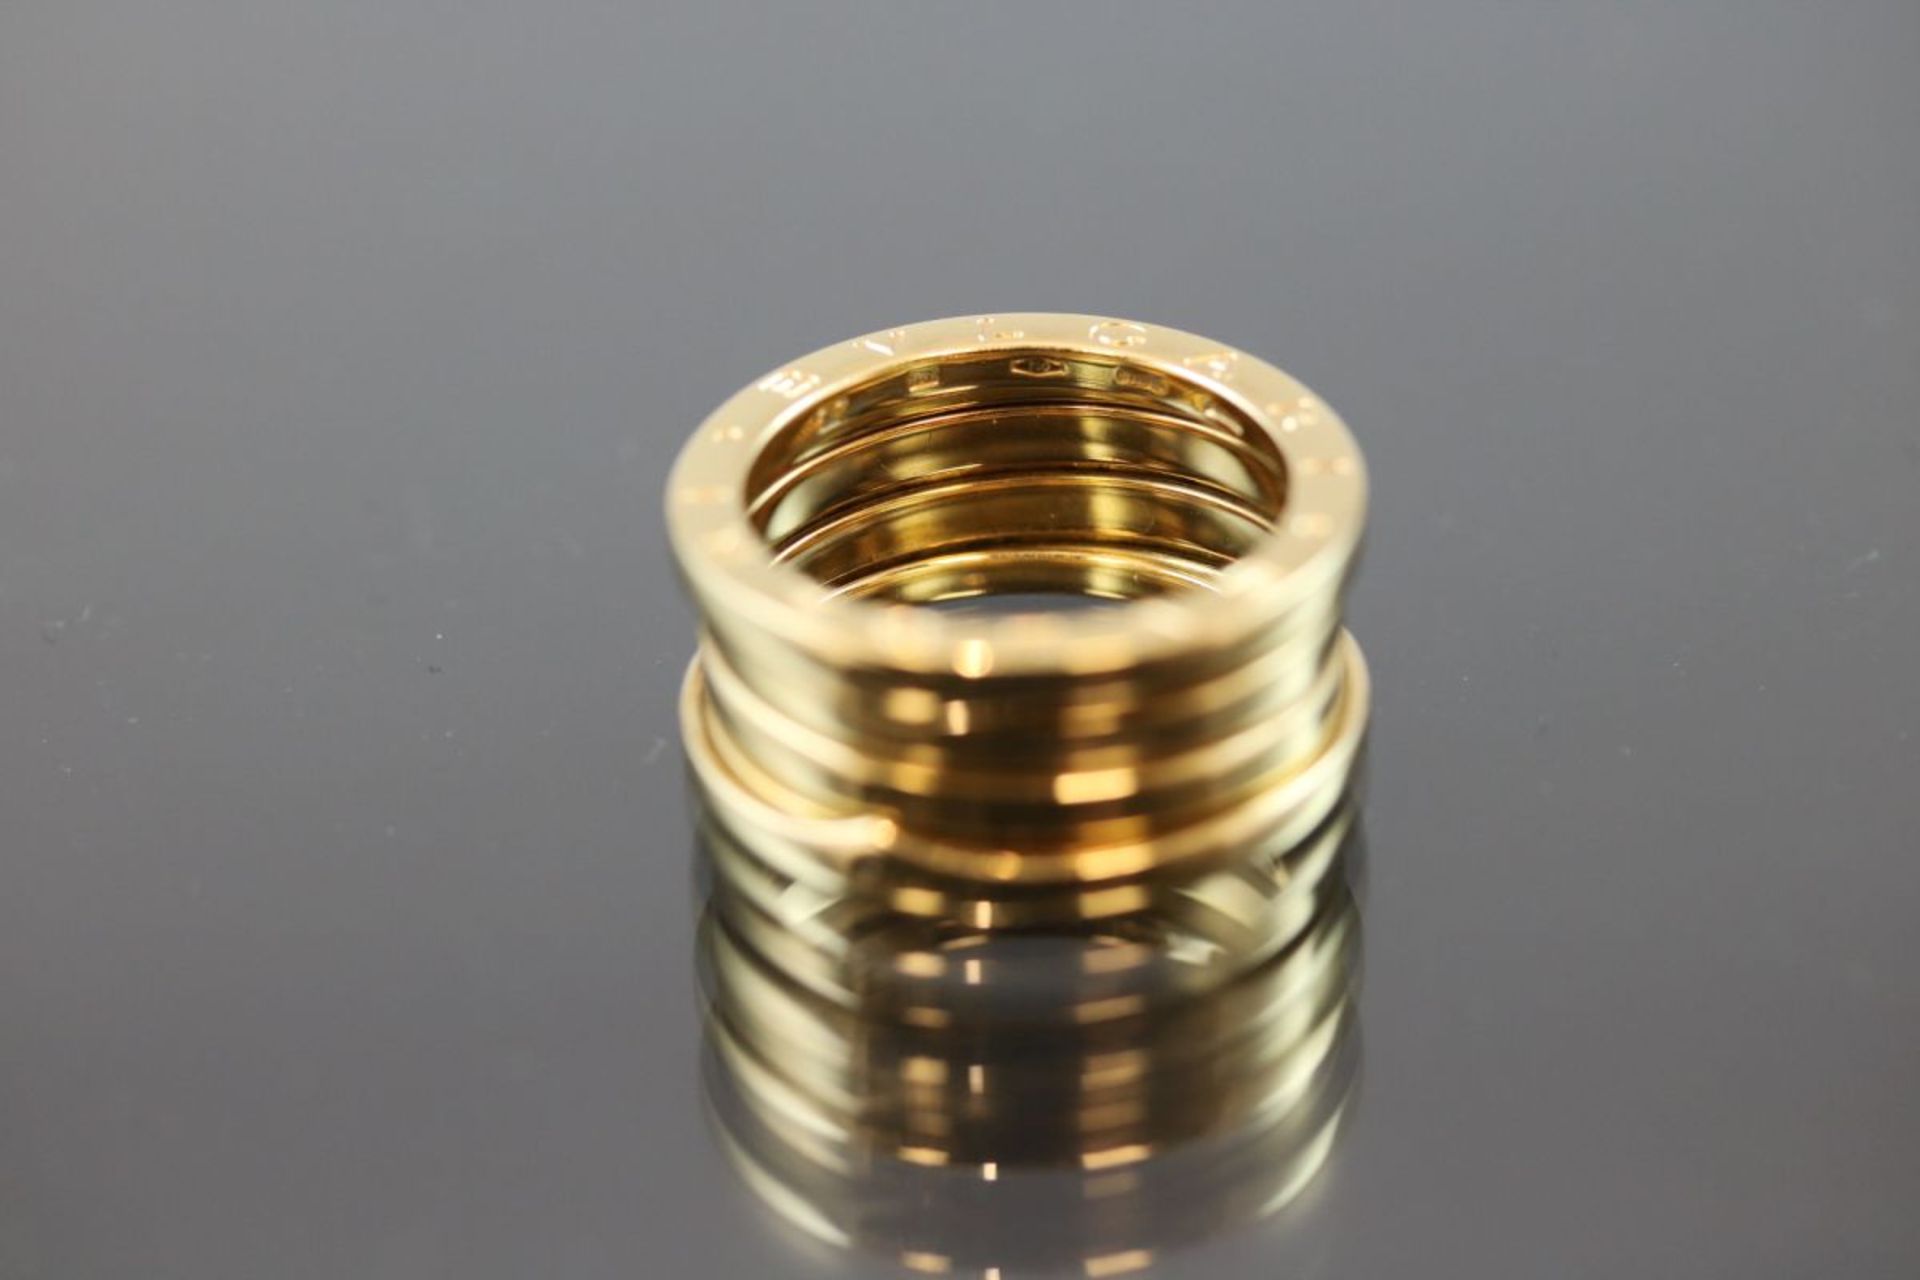 Bulgari-Ring, 750 Gold11,5 Gramm Ringgröße: 57Schätzpreis: 2050,- - Bild 3 aus 3